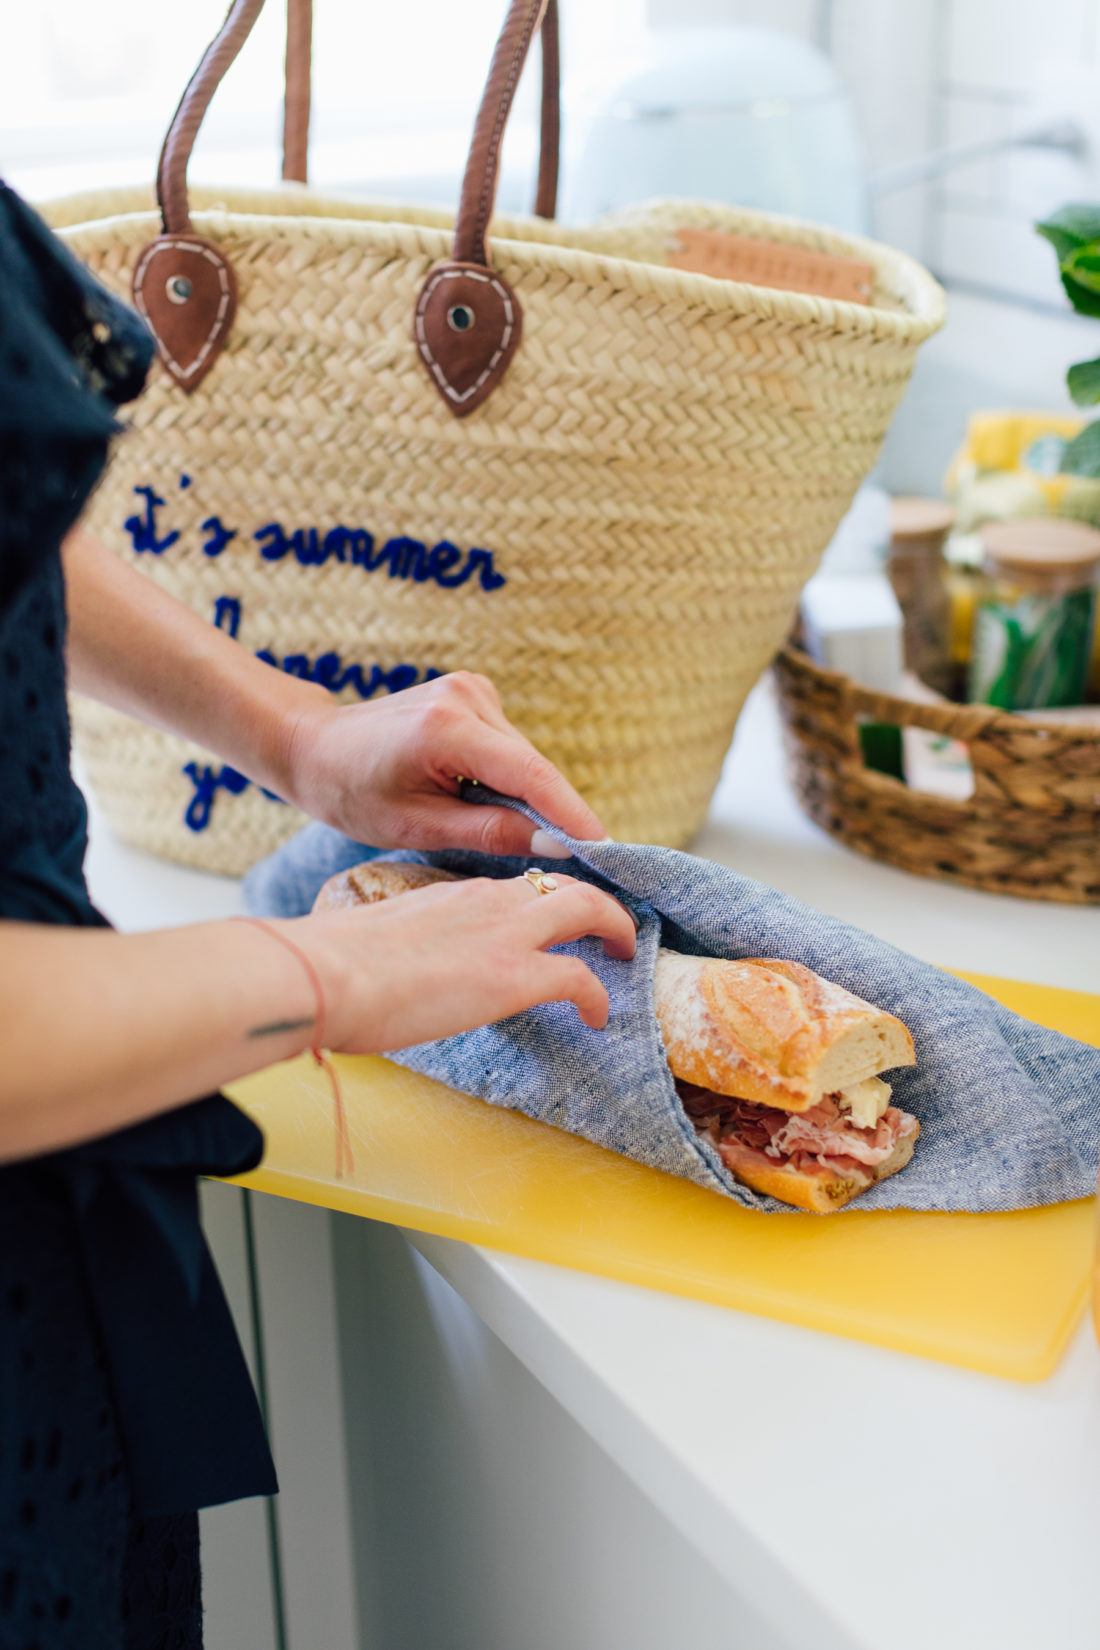 Eva Amurri Martino wraps up a sandwich for picnic